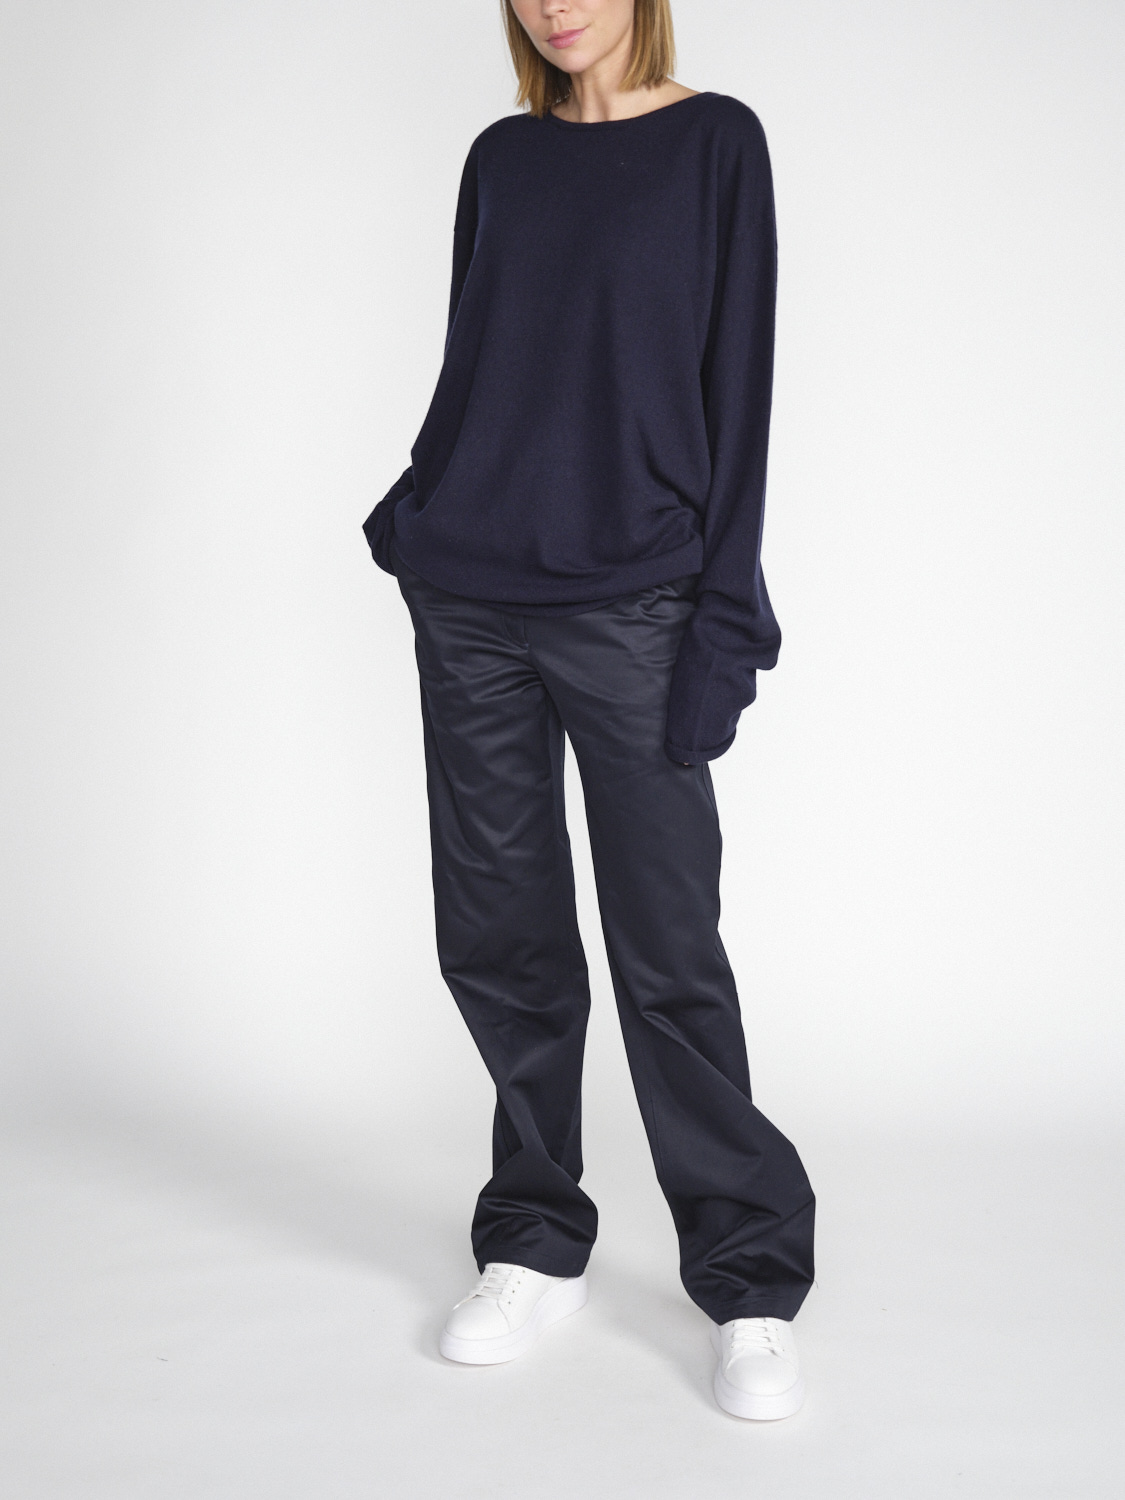 Extreme Cashmere N° 314 Pisces – Leichter Pullover aus Kaschmir   marine One Size